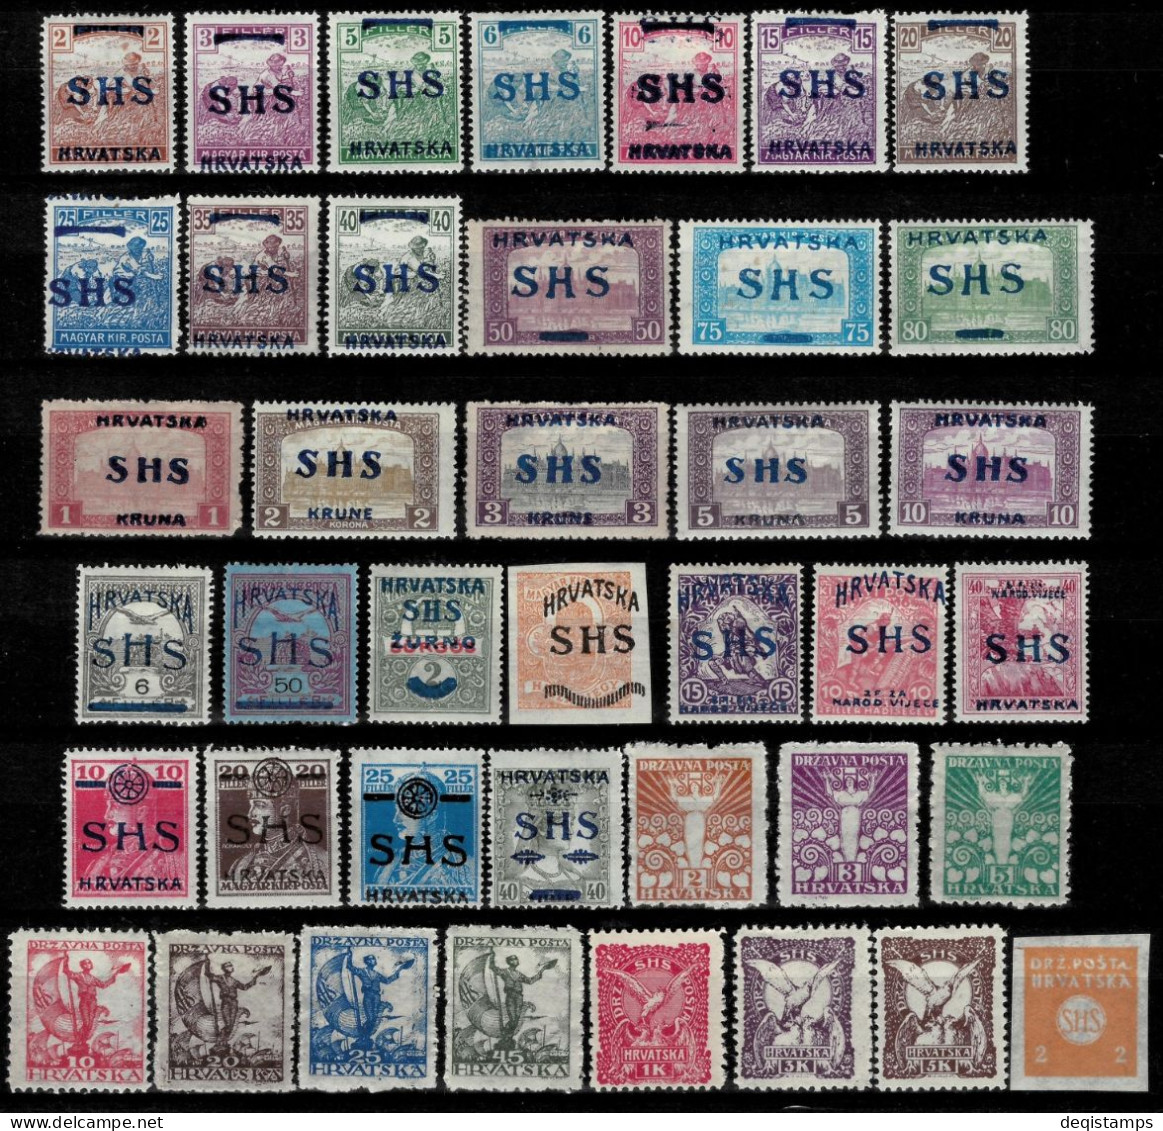 SHS - Croatia Stamps 1918/19  Hungary Stamps Overprinted  MH Sets - Ongebruikt